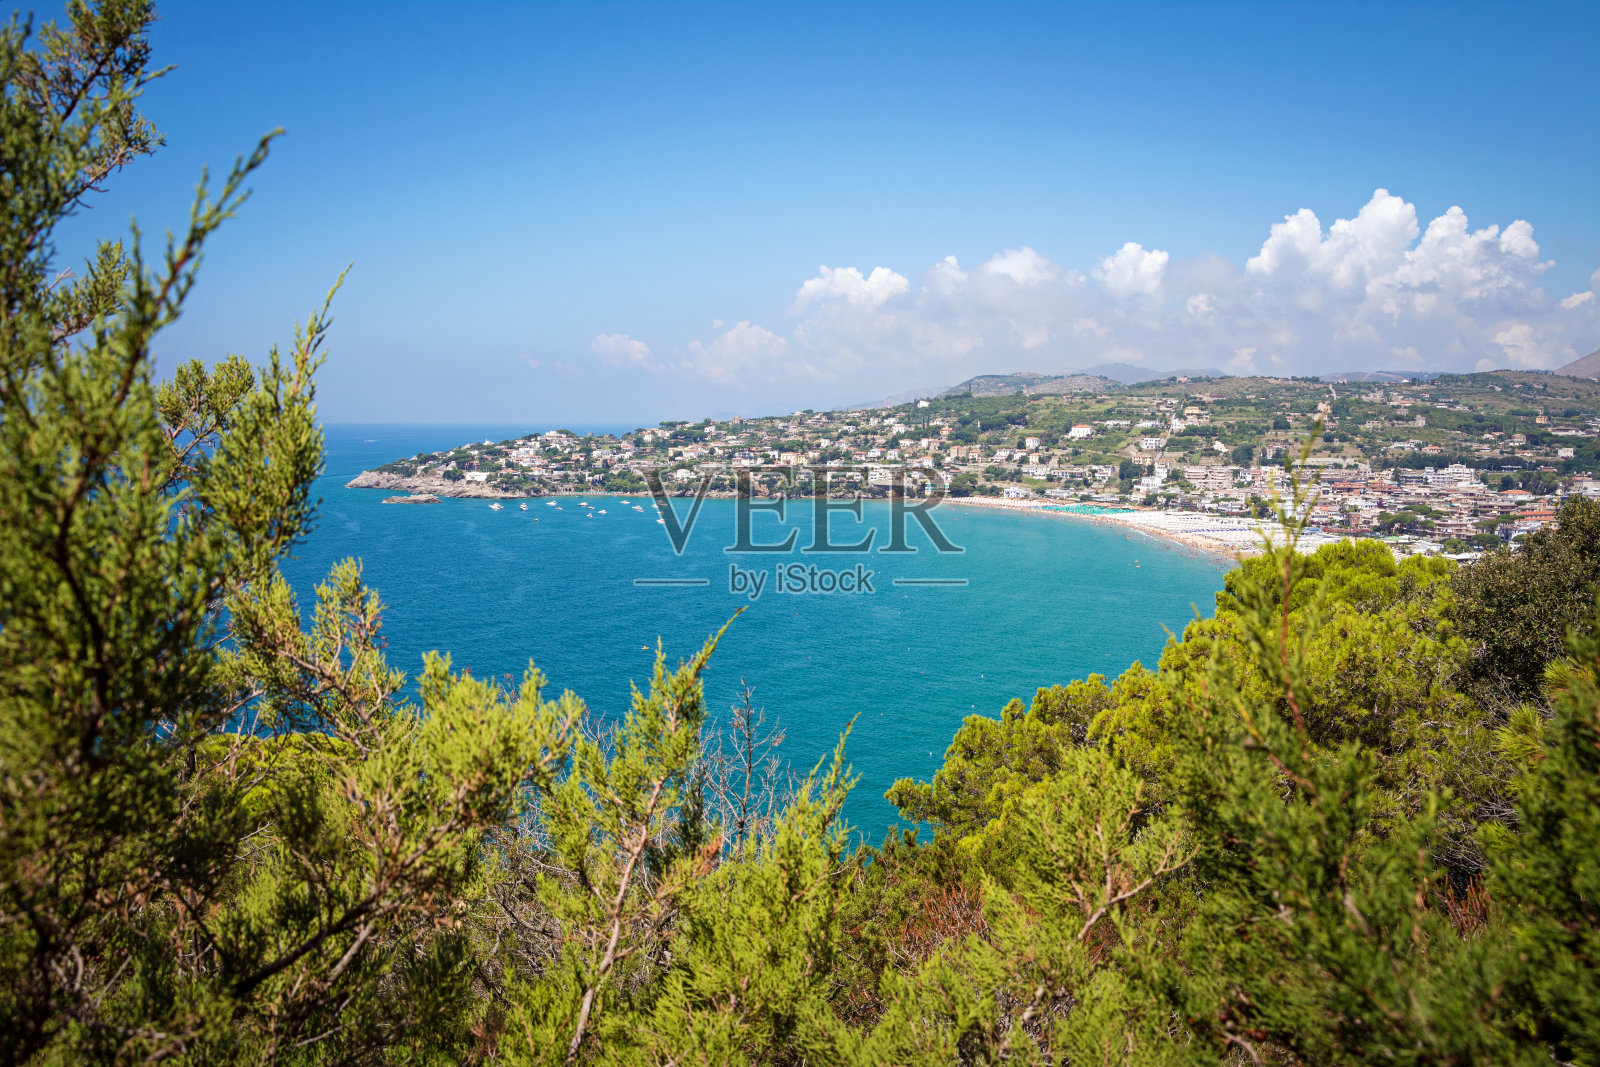 塞拉波海滩全景，地中海最美丽的沙滩之一。加埃塔,意大利照片摄影图片